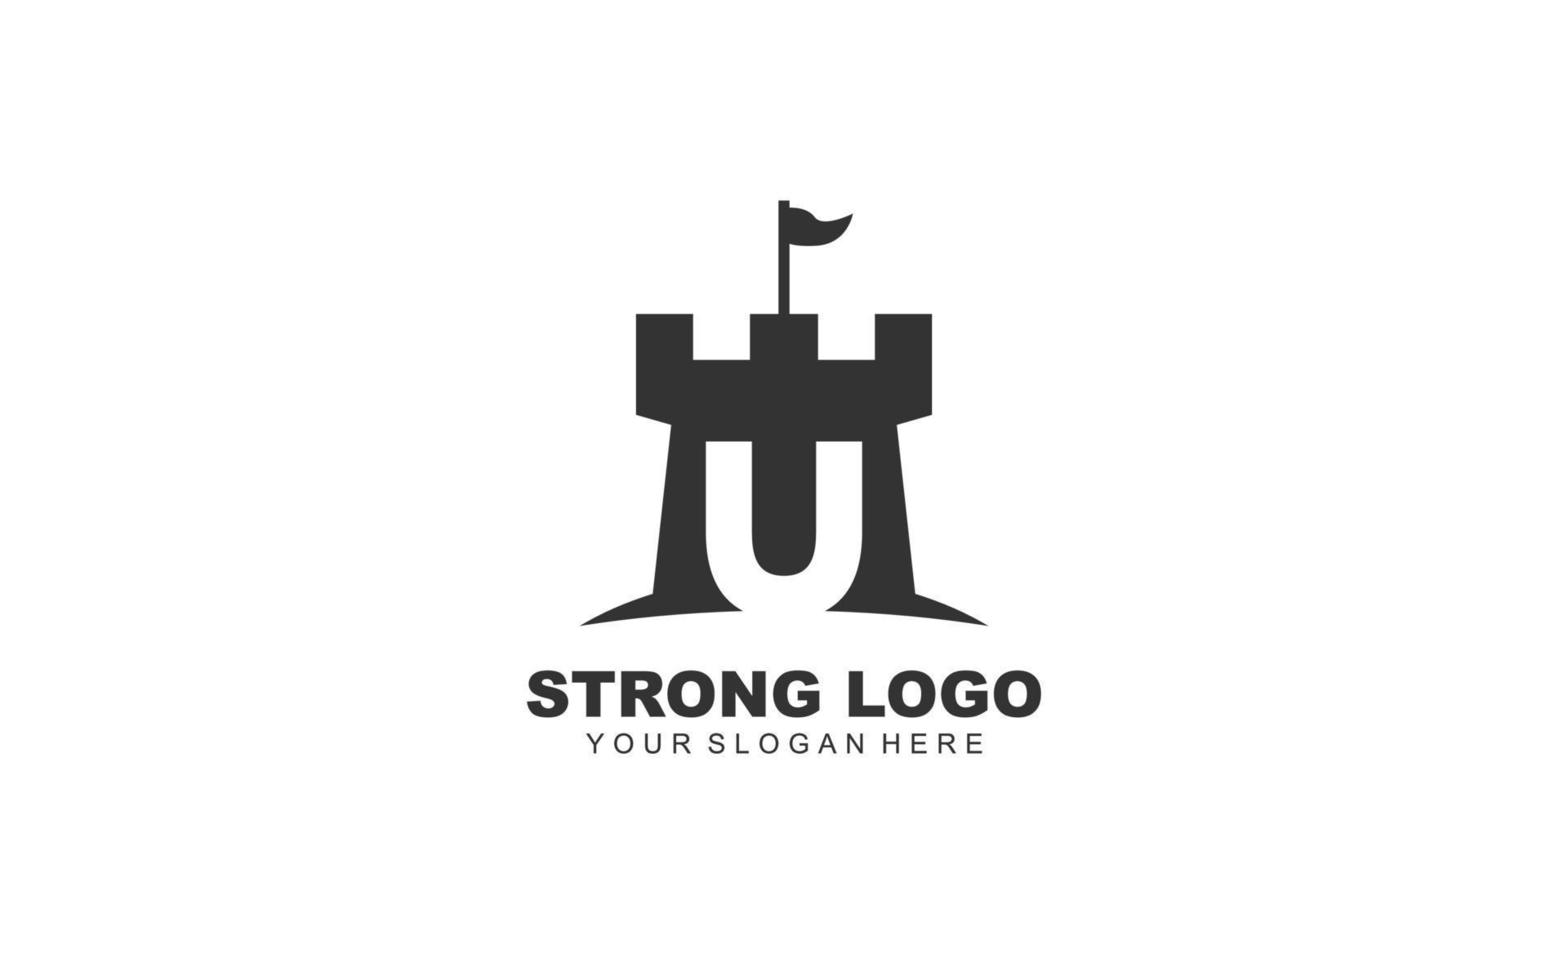 U FORTRESS logo design inspiration. Vector letter template design for brand.